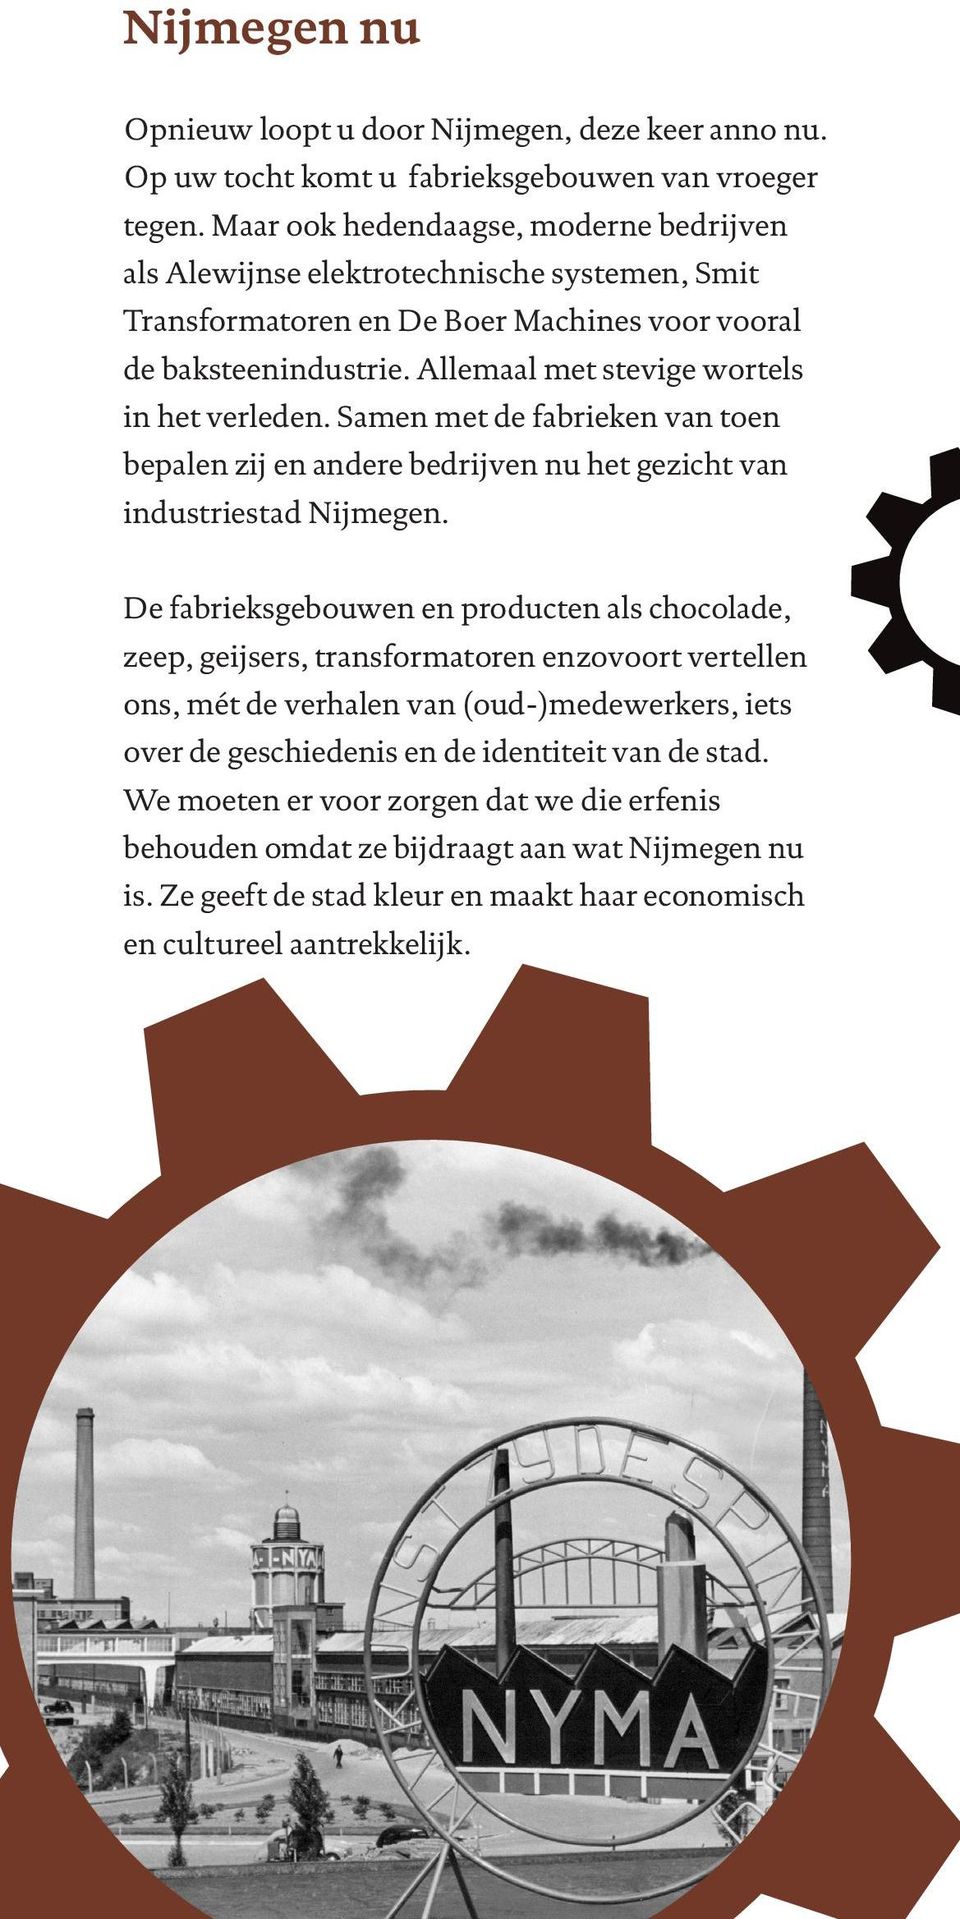 Allemaal met stevige wortels in het verleden. Samen met de fabrieken van toen bepalen zij en andere bedrijven nu het gezicht van industriestad Nijmegen.